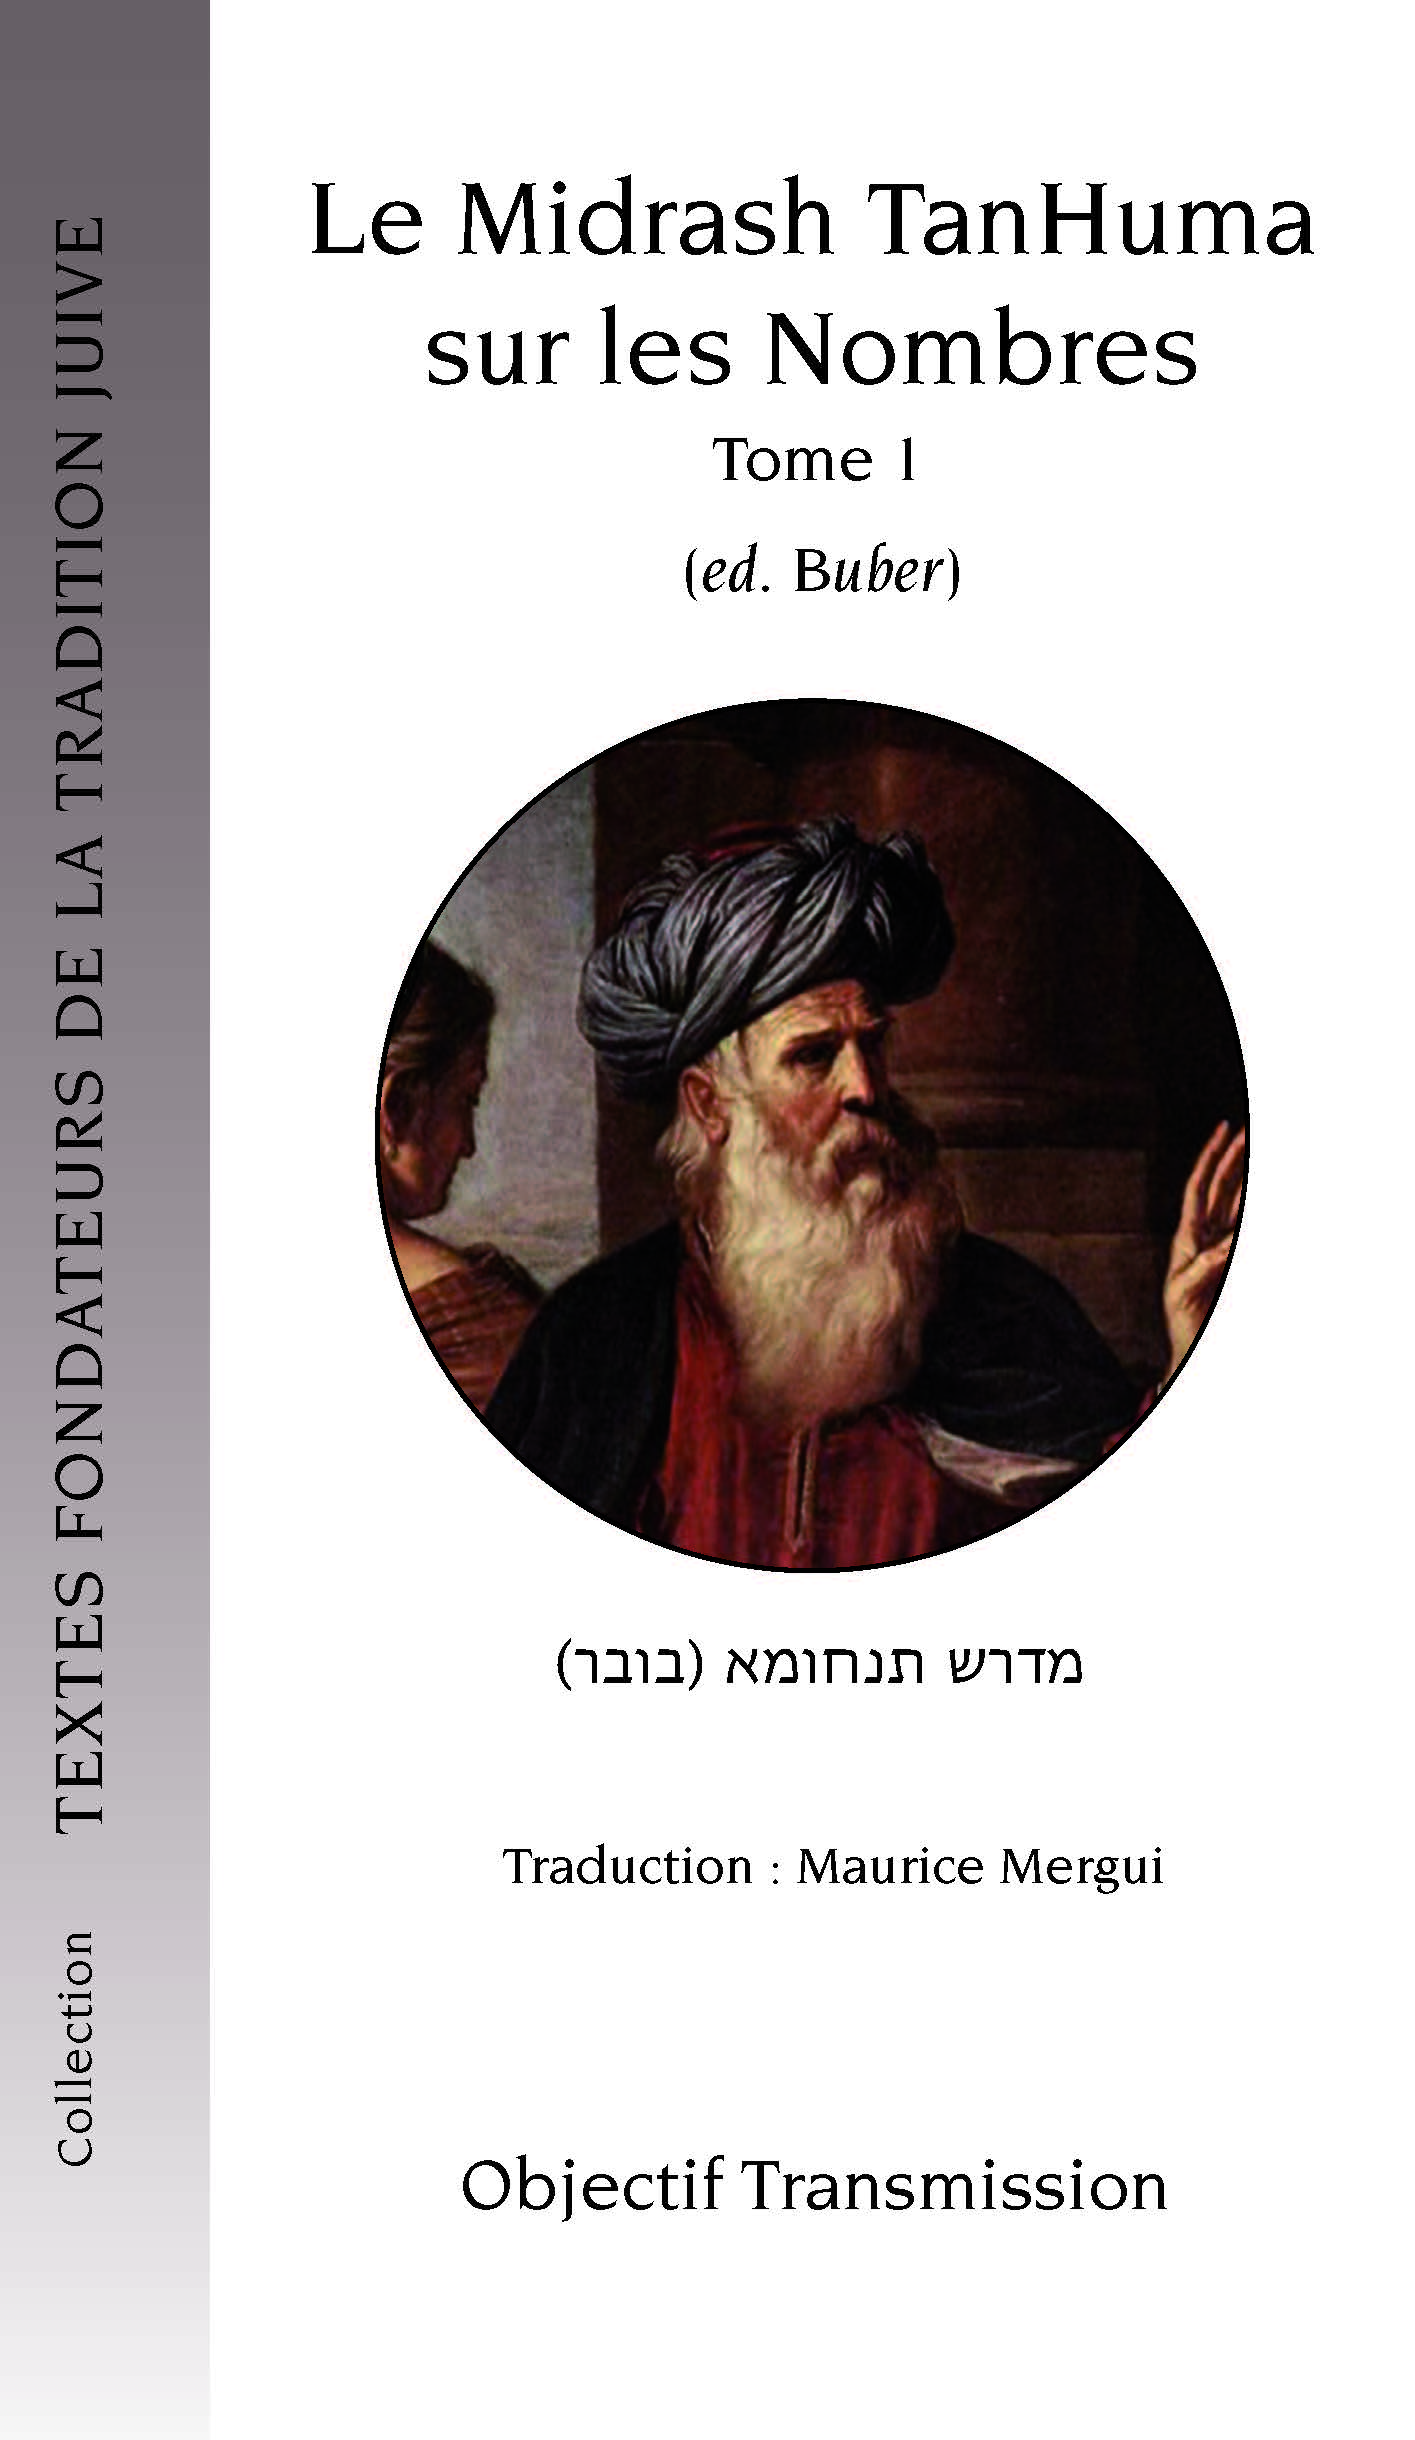 Le Midrash TanHuma sur les Nombres (version Buber) Tome 1 